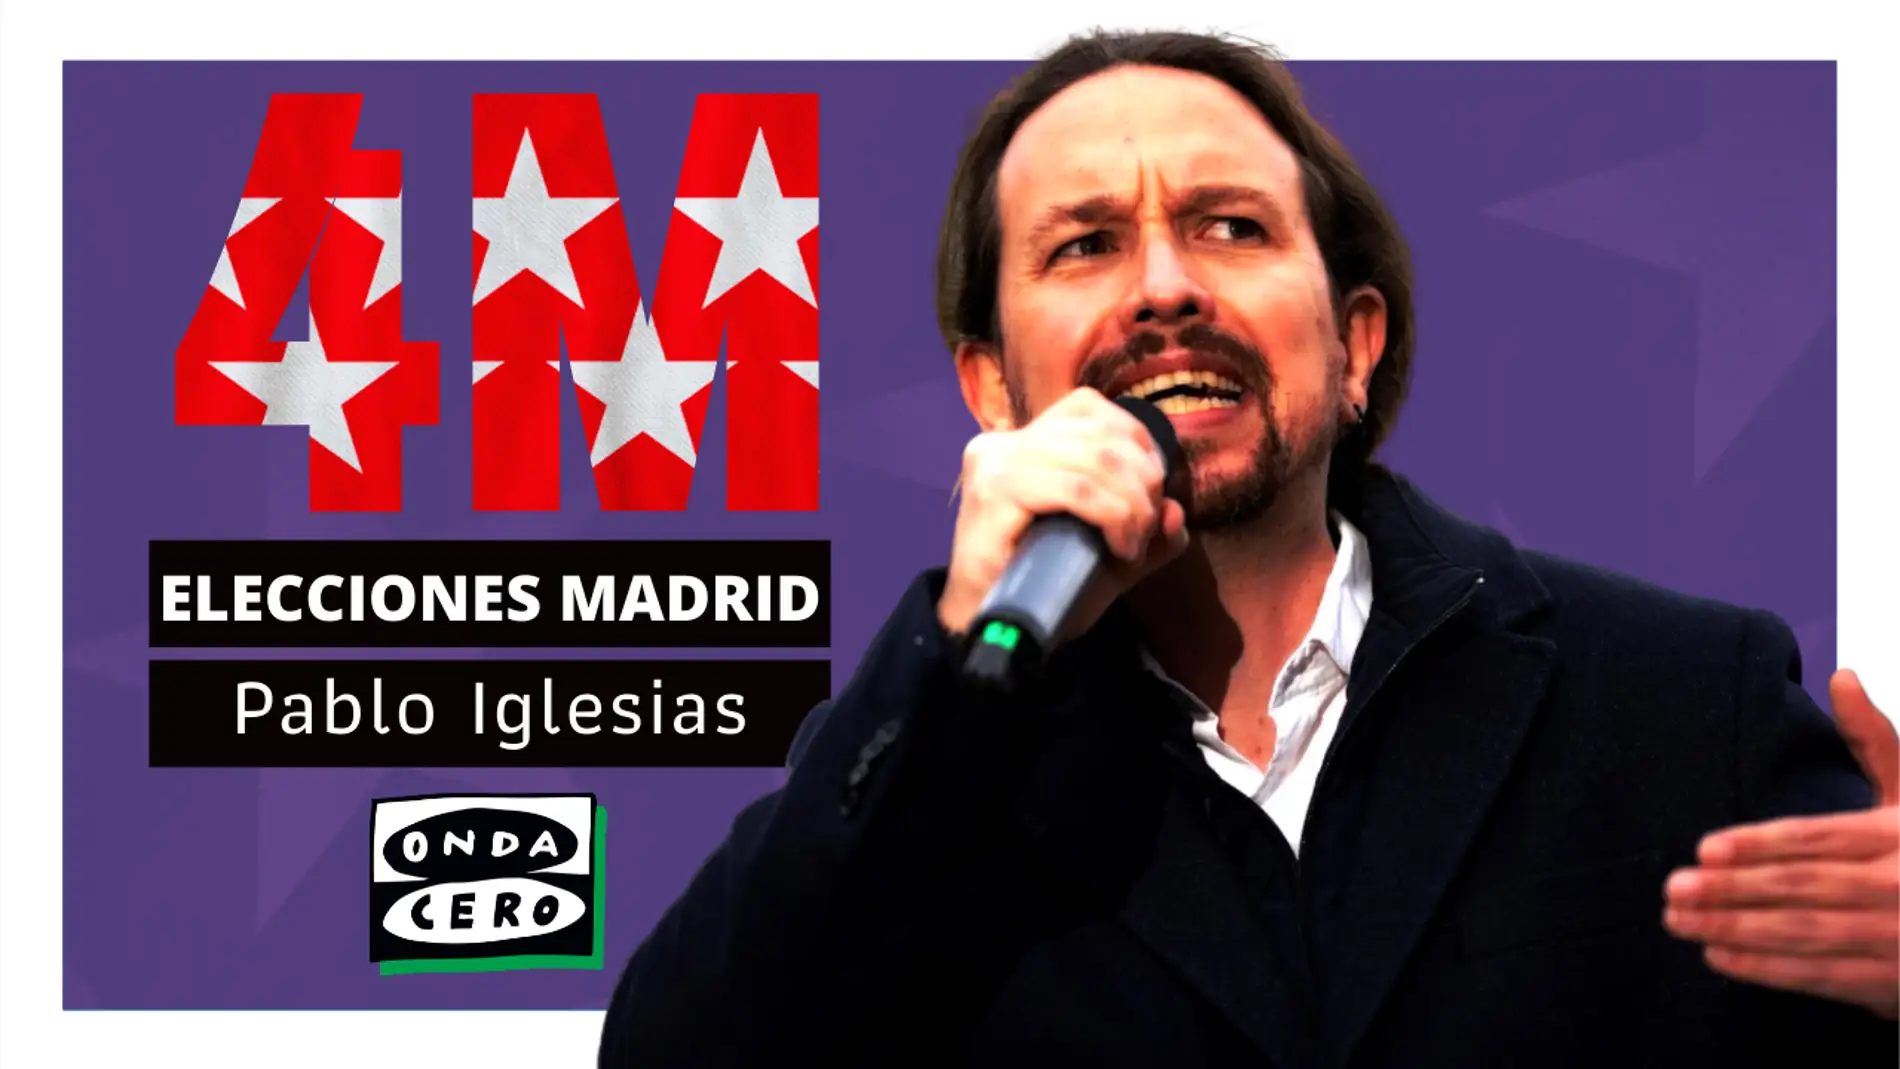 Así es Pablo Iglesias, candidato de Unidas Podemos en las elecciones madrileñas